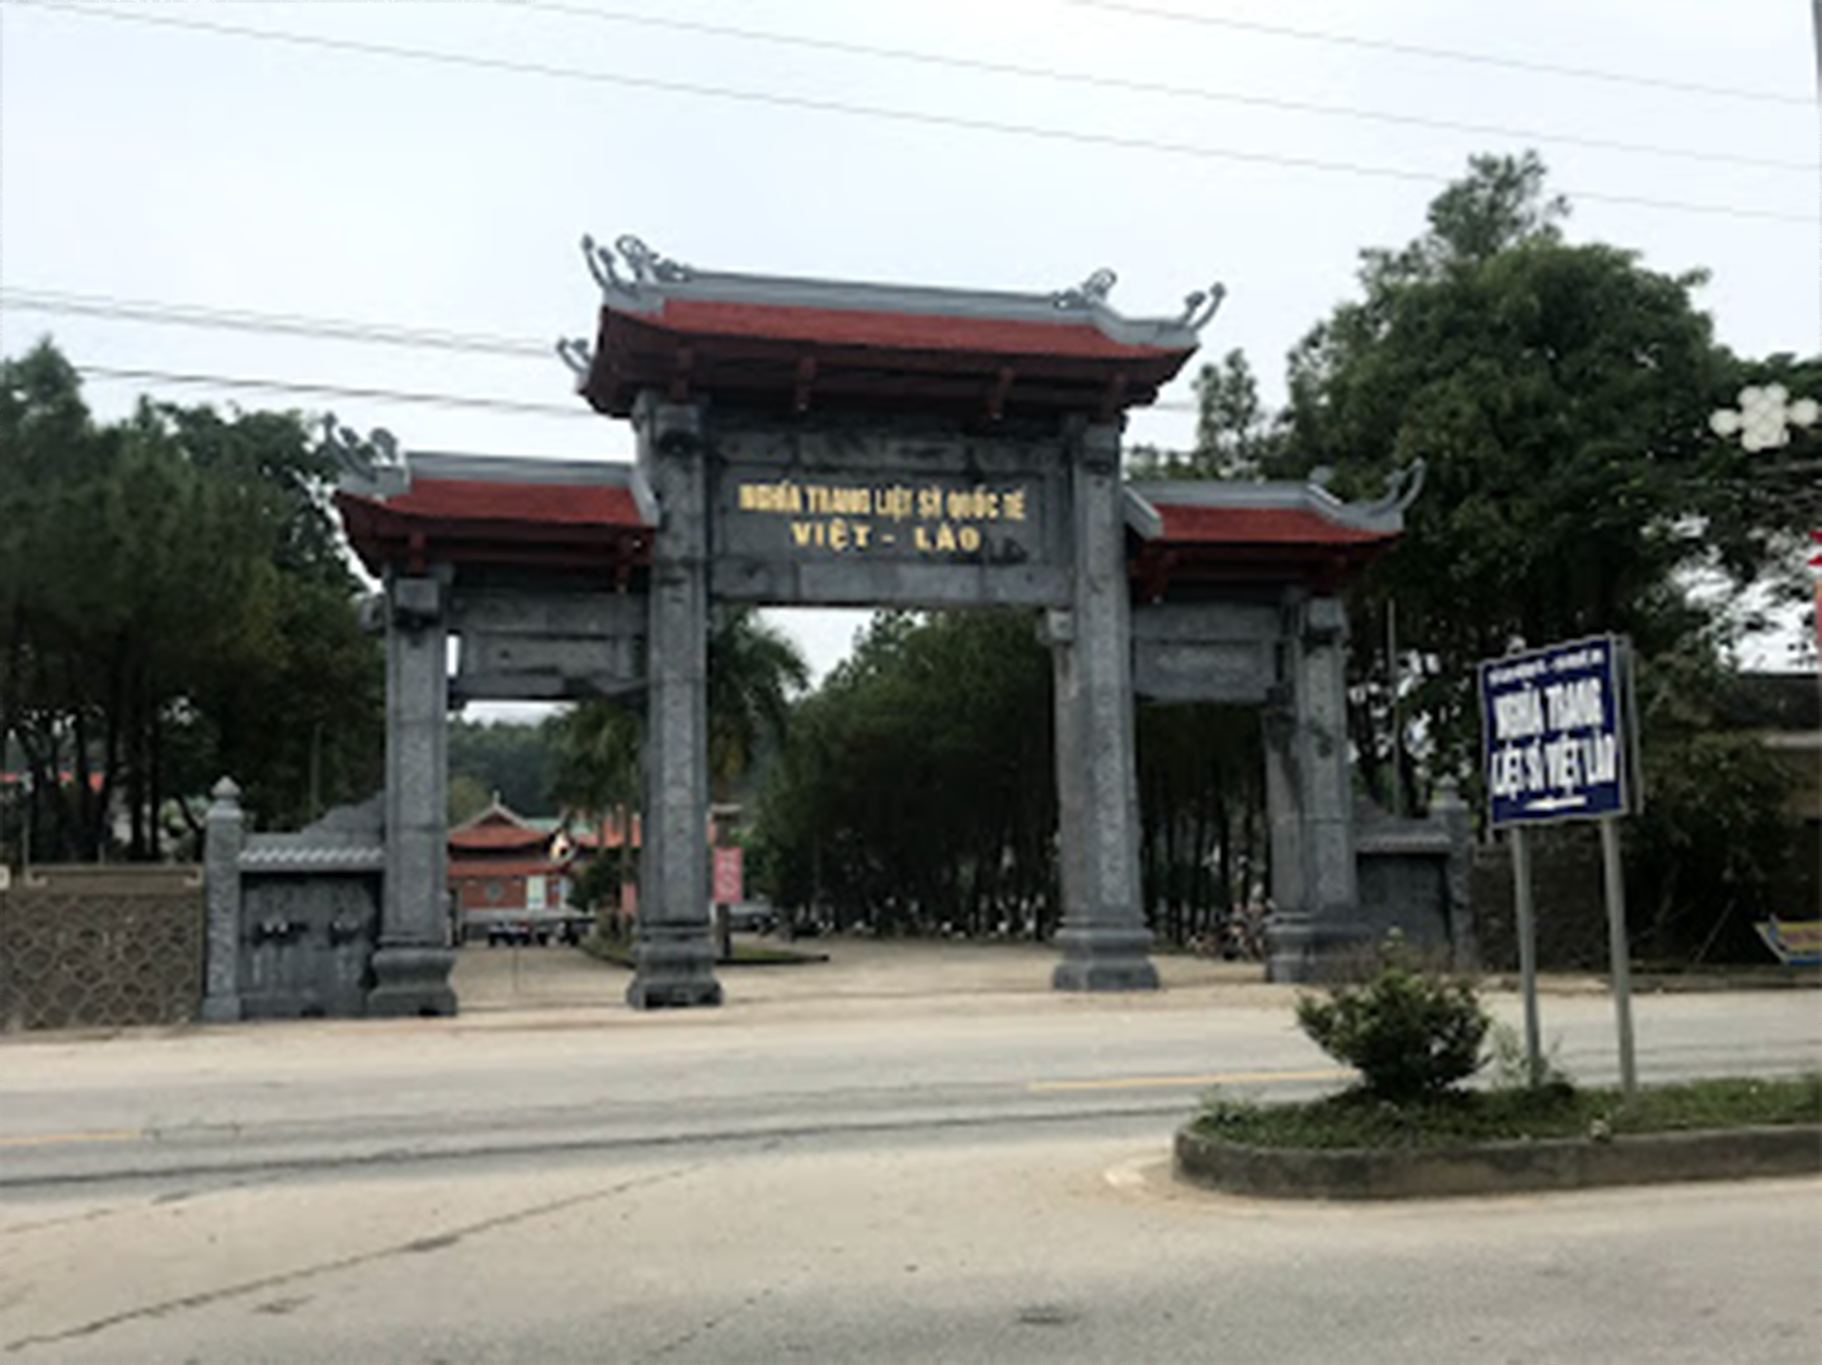 Du lịch văn hóa tâm linh Nghĩa trang liệt sỹ Việt Lào